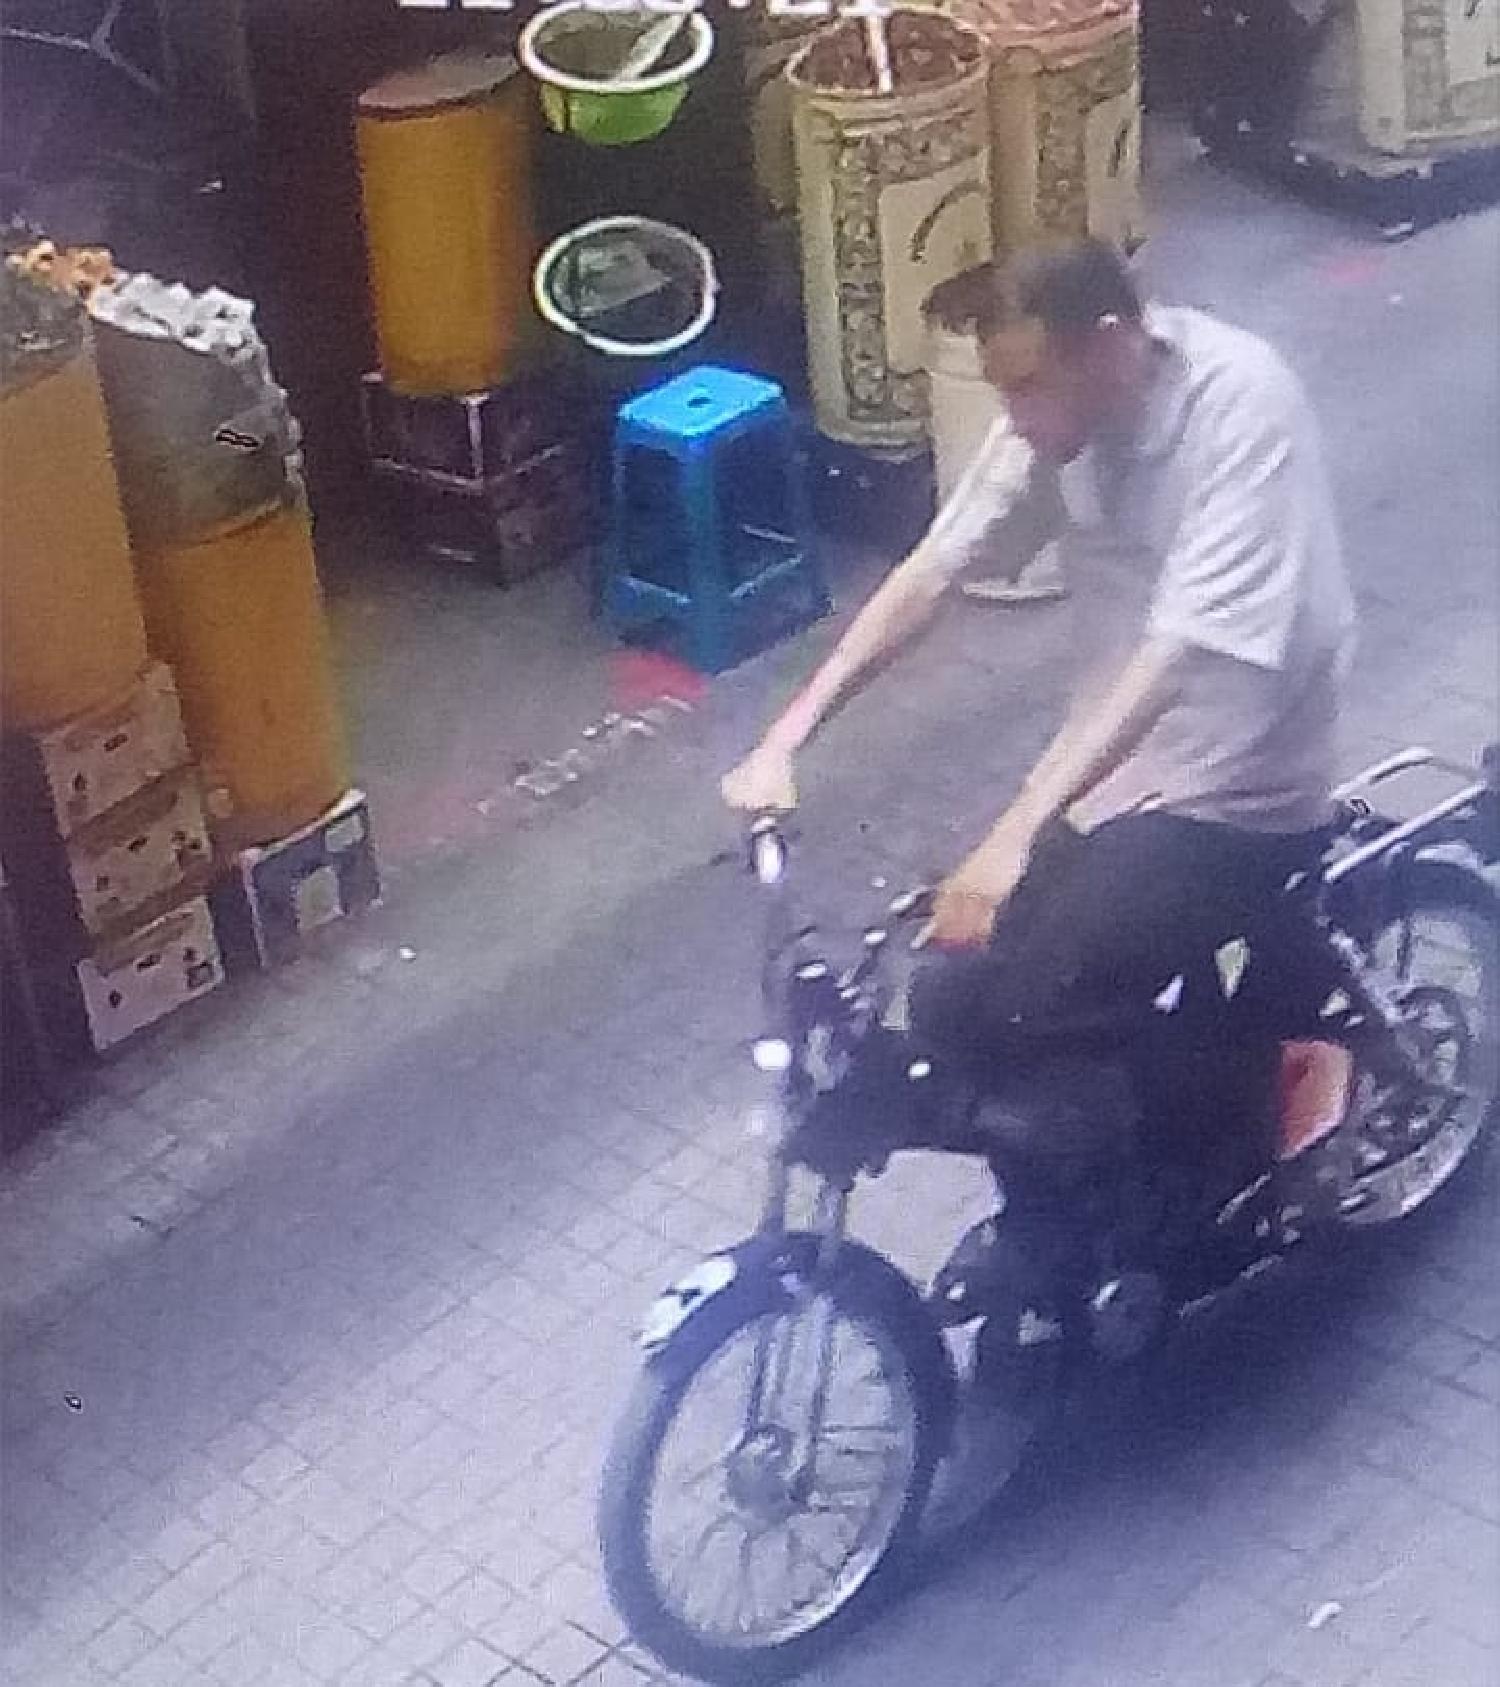 كاميرا للمراقبة ترصد عملية سرقة دراجة نارية بحي الملاح